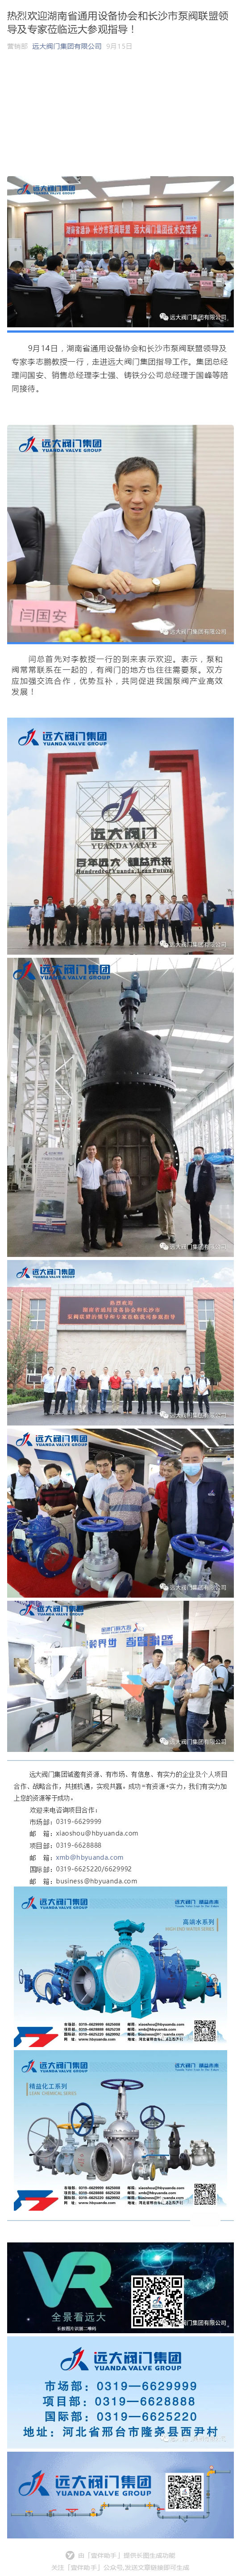 熱烈歡迎湖南省通用設備協會和長沙市泵閥聯盟領導及專家蒞臨遠大參觀指導！